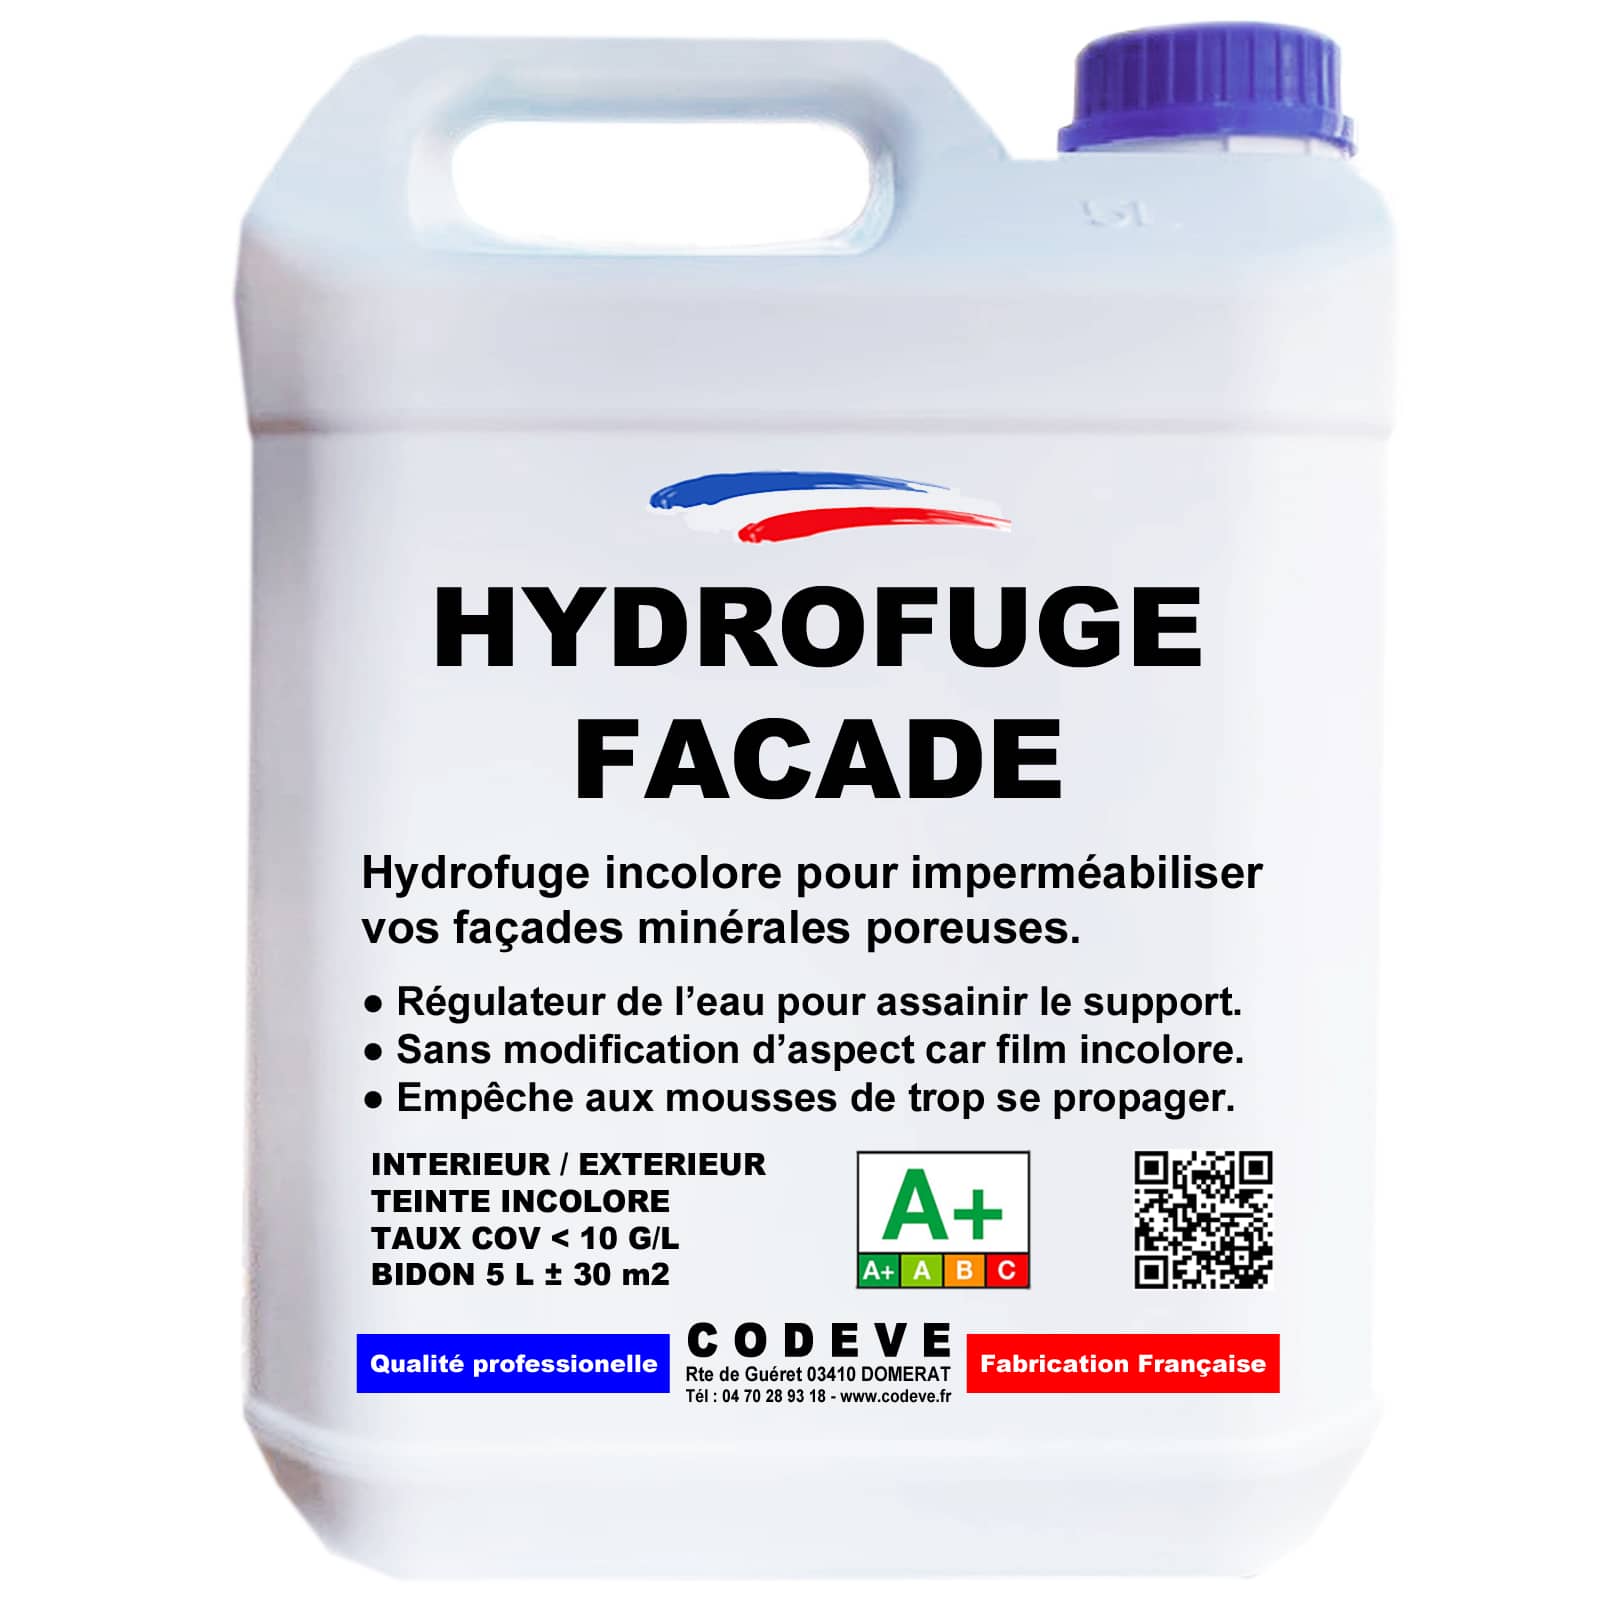 Hydrofuge façade : comment choisir le bon produit ? 